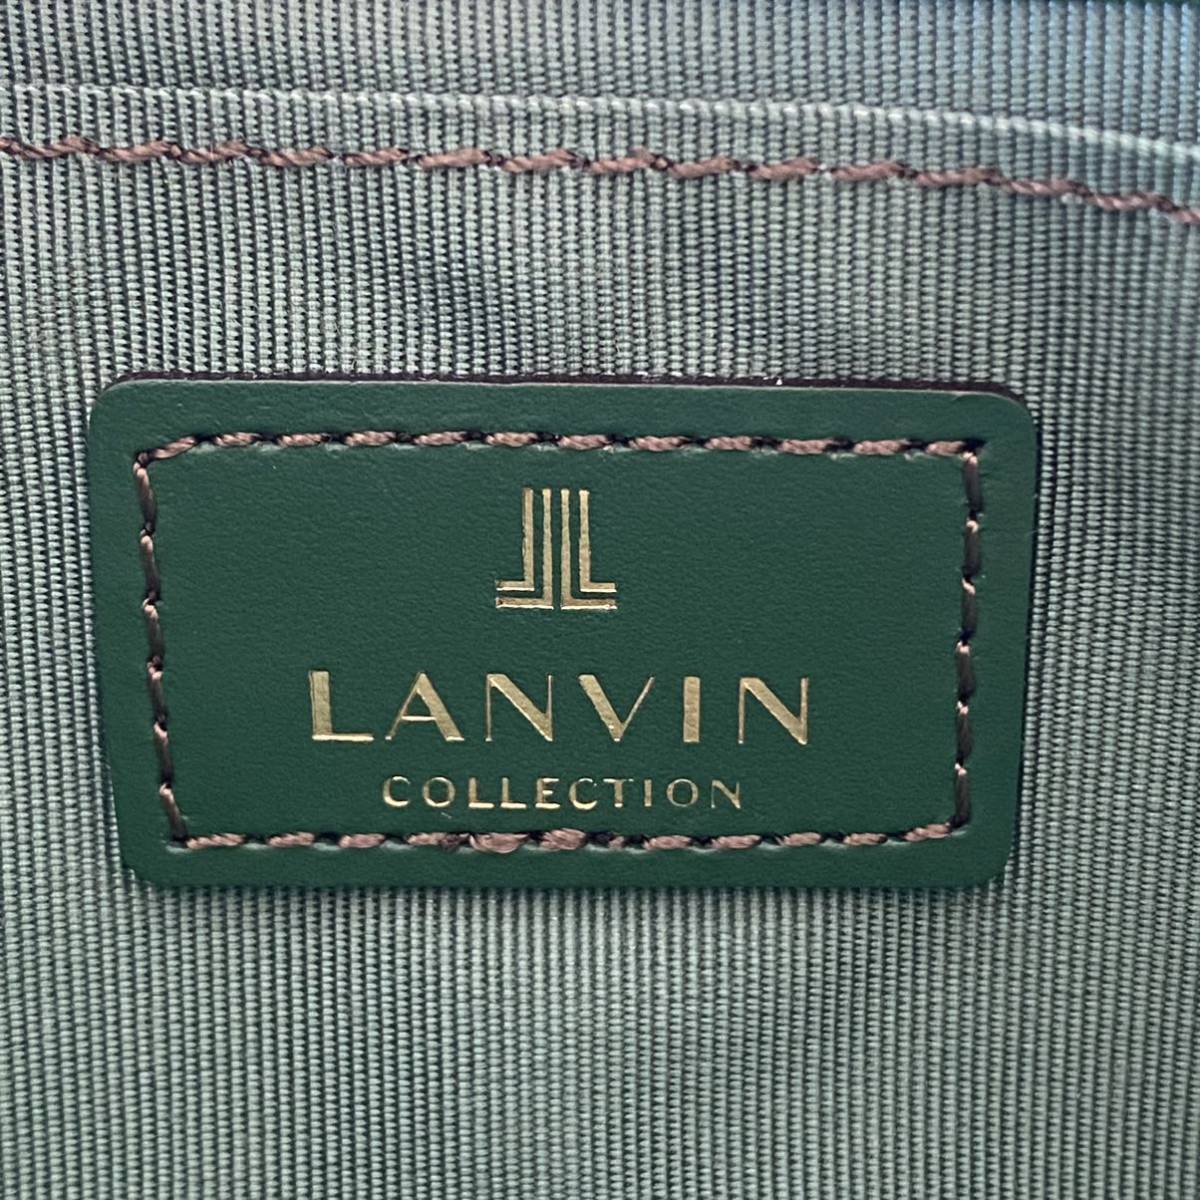 【LANVIN】ランバン フェリアパース ラウンドファスナー長財布 未使用 極美品 素敵なカラーリングでプレゼントにもオススメです♪